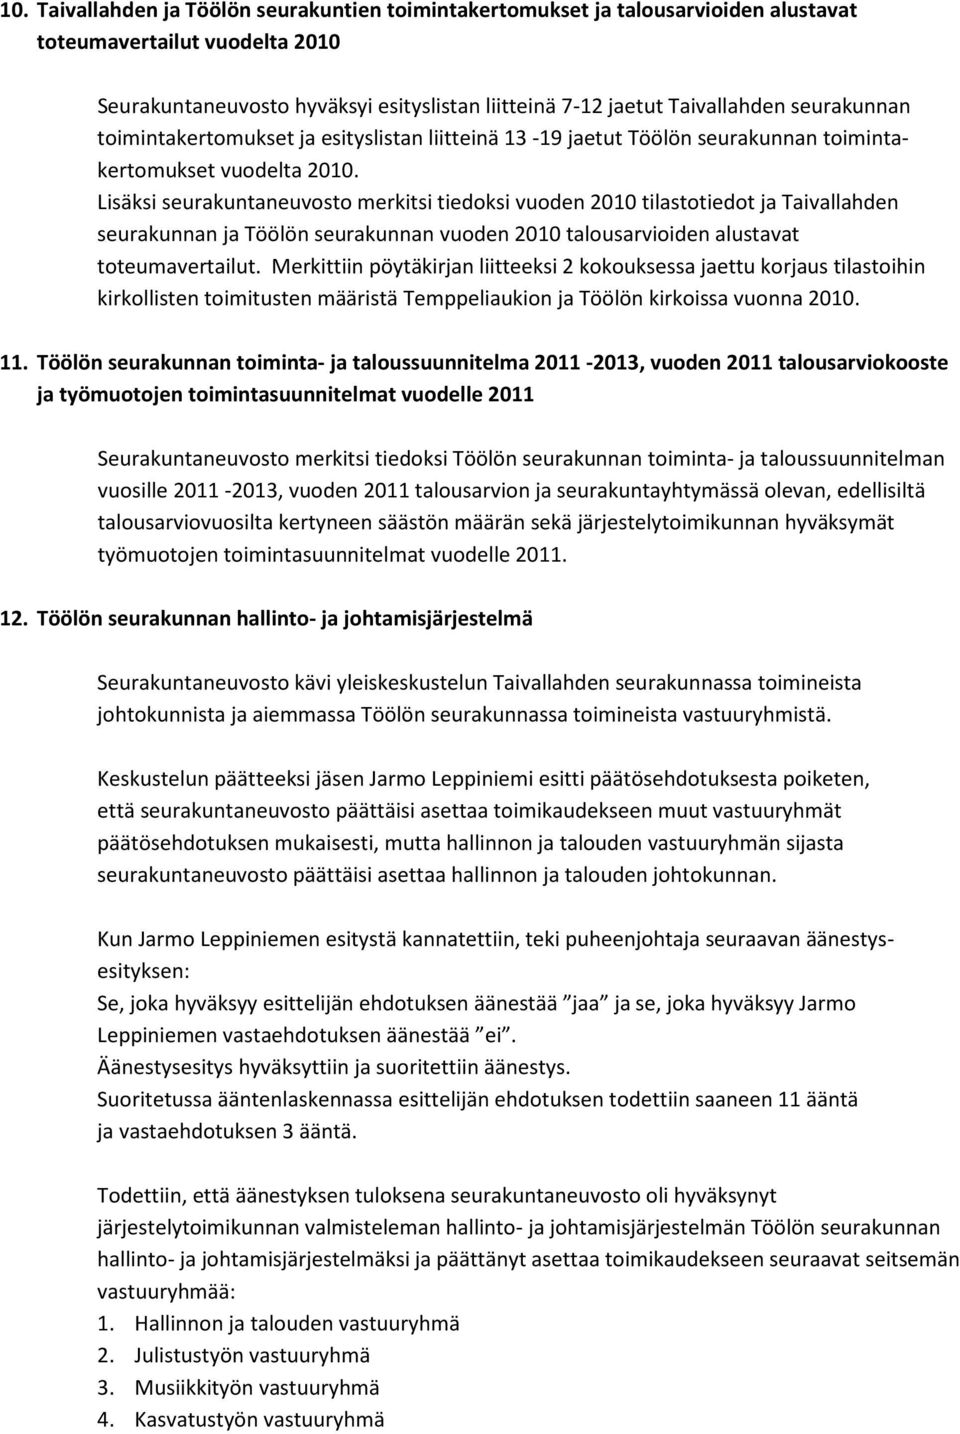 Lisäksi seurakuntaneuvosto merkitsi tiedoksi vuoden 2010 tilastotiedot ja Taivallahden seurakunnan ja Töölön seurakunnan vuoden 2010 talousarvioiden alustavat toteumavertailut.